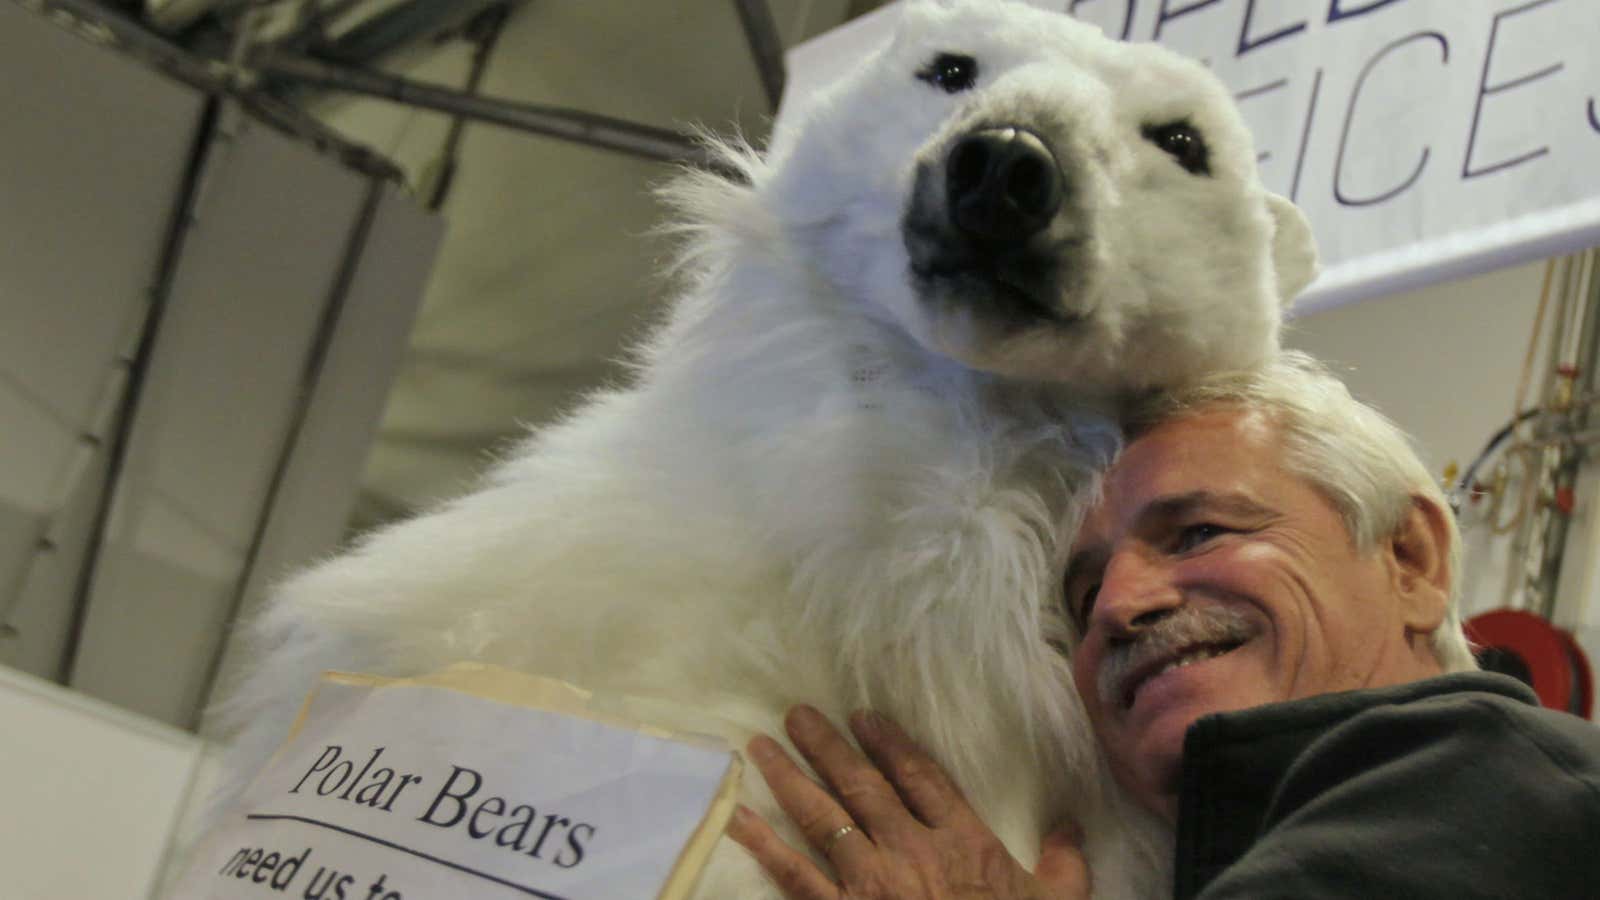 More polar bear, less terrorists.